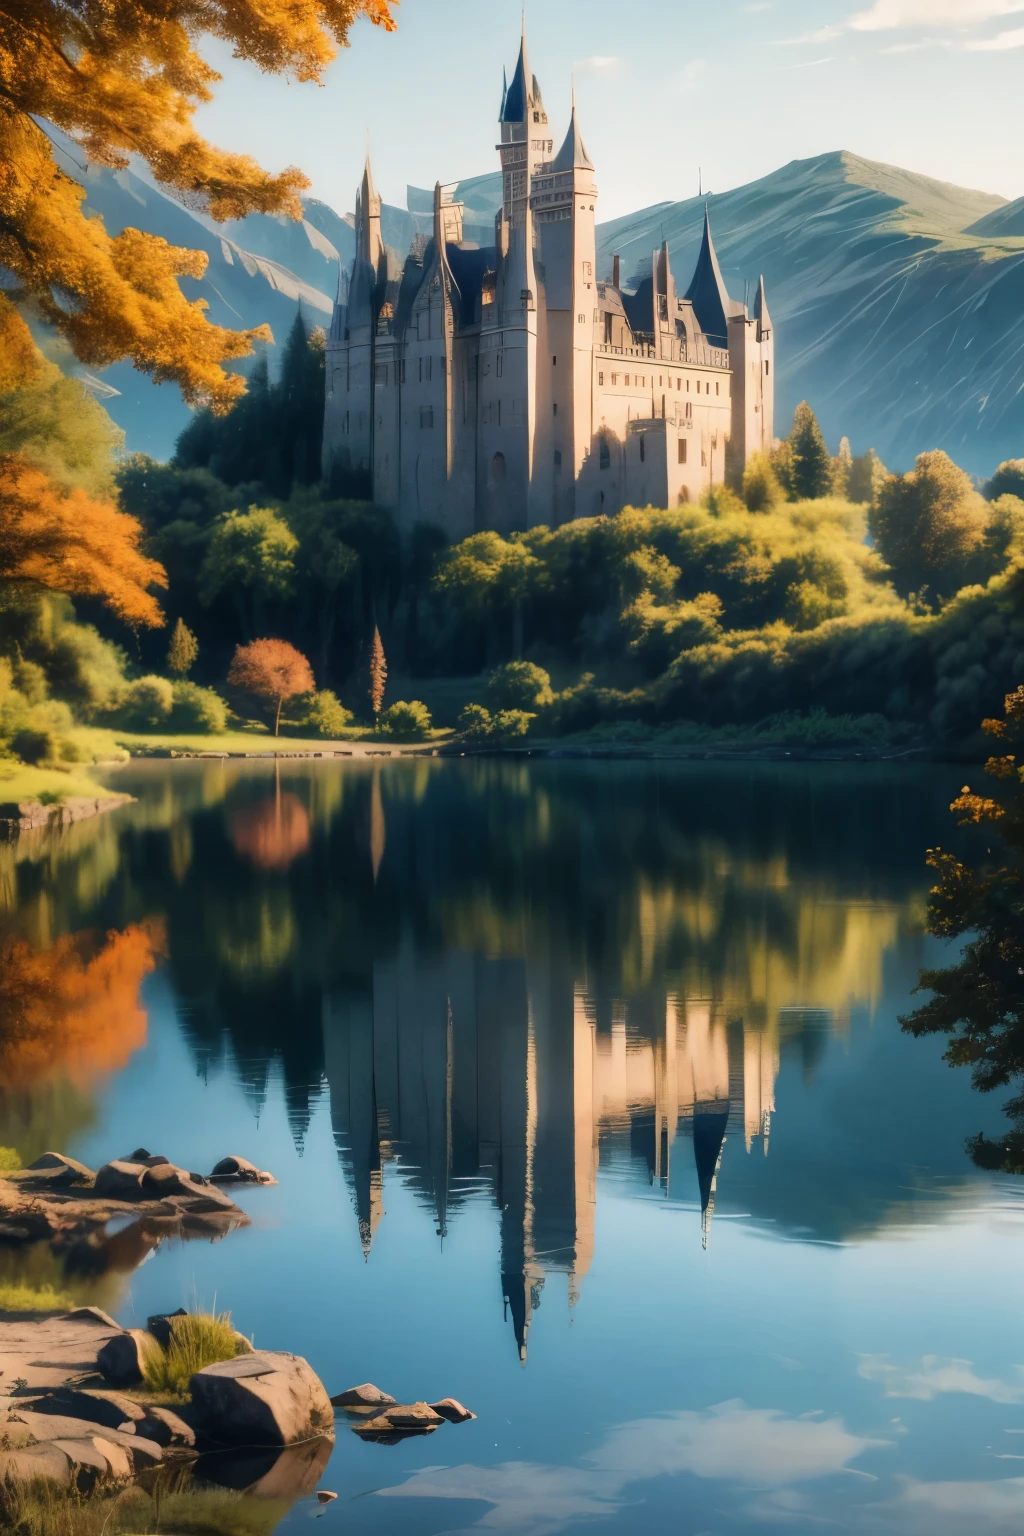 女孩們,  面向湖的背景城堡, 它的倒影映在水面上，映射出它辉煌的岁月